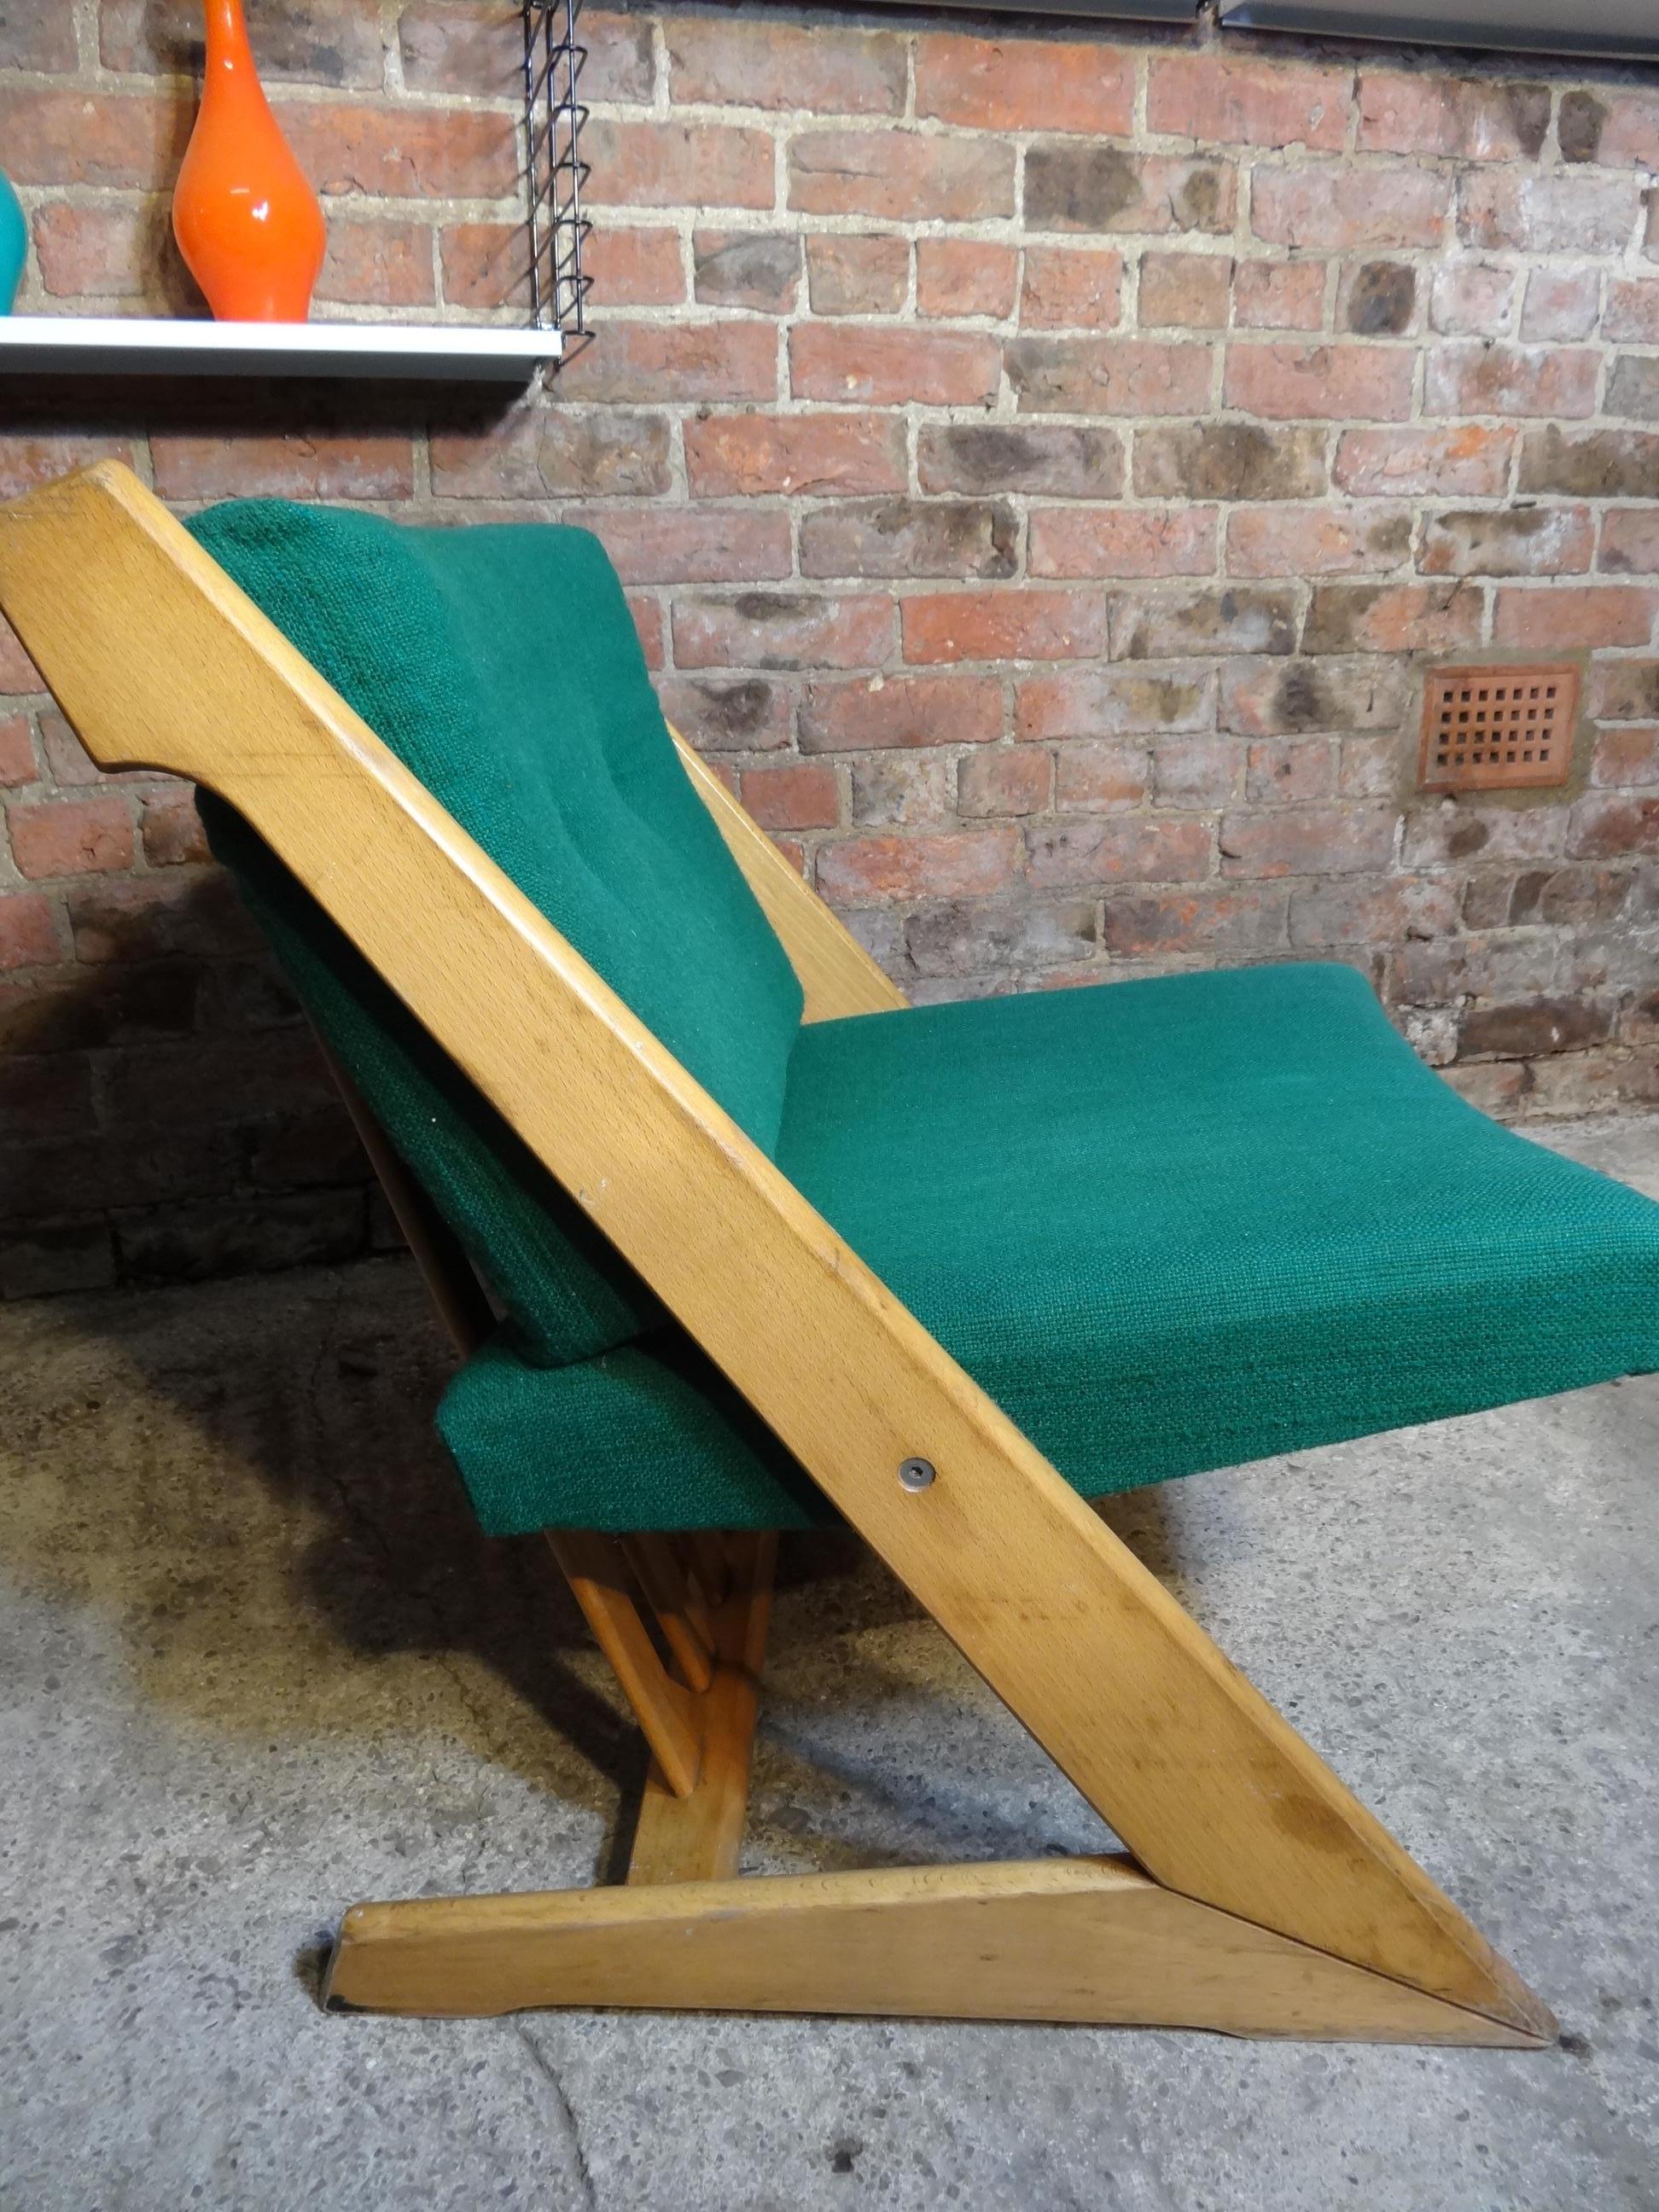 Cette solide chaise hollandaise à cadre en forme de Z est livrée avec des coussins en tissu vert. Dans le style de Gerrit Rietveld, cette chaise hollandaise classique est l'antiquité du futur et s'intègre parfaitement à tout décor.

Mesures :